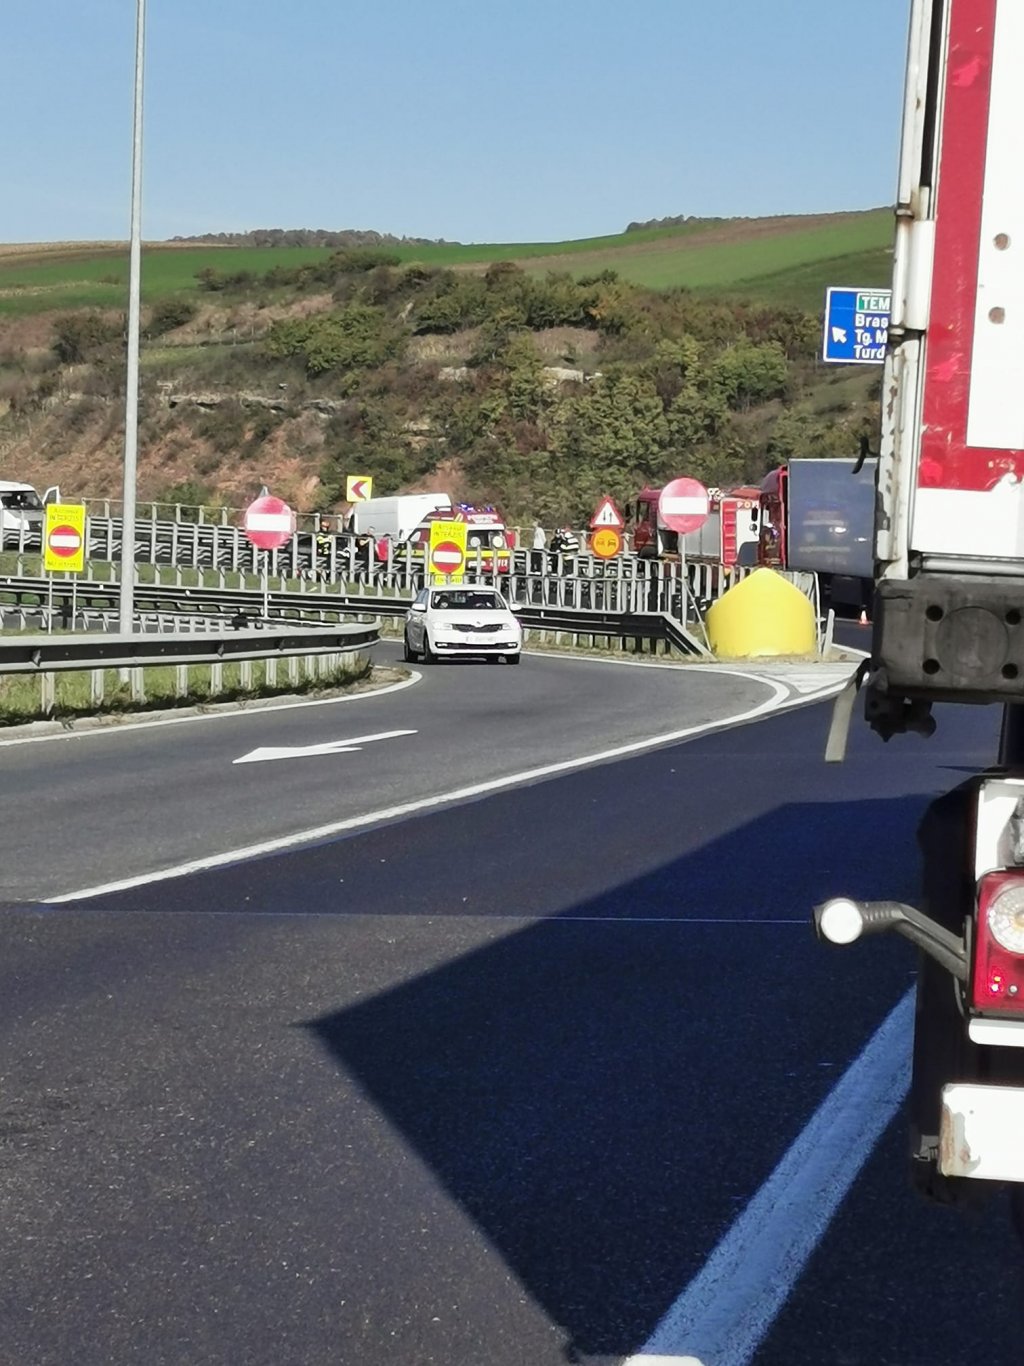 Cluj: Accident cu răniți pe nodul autostrăzii A3. O femeie și un copil de 9 ani, transportați la spital